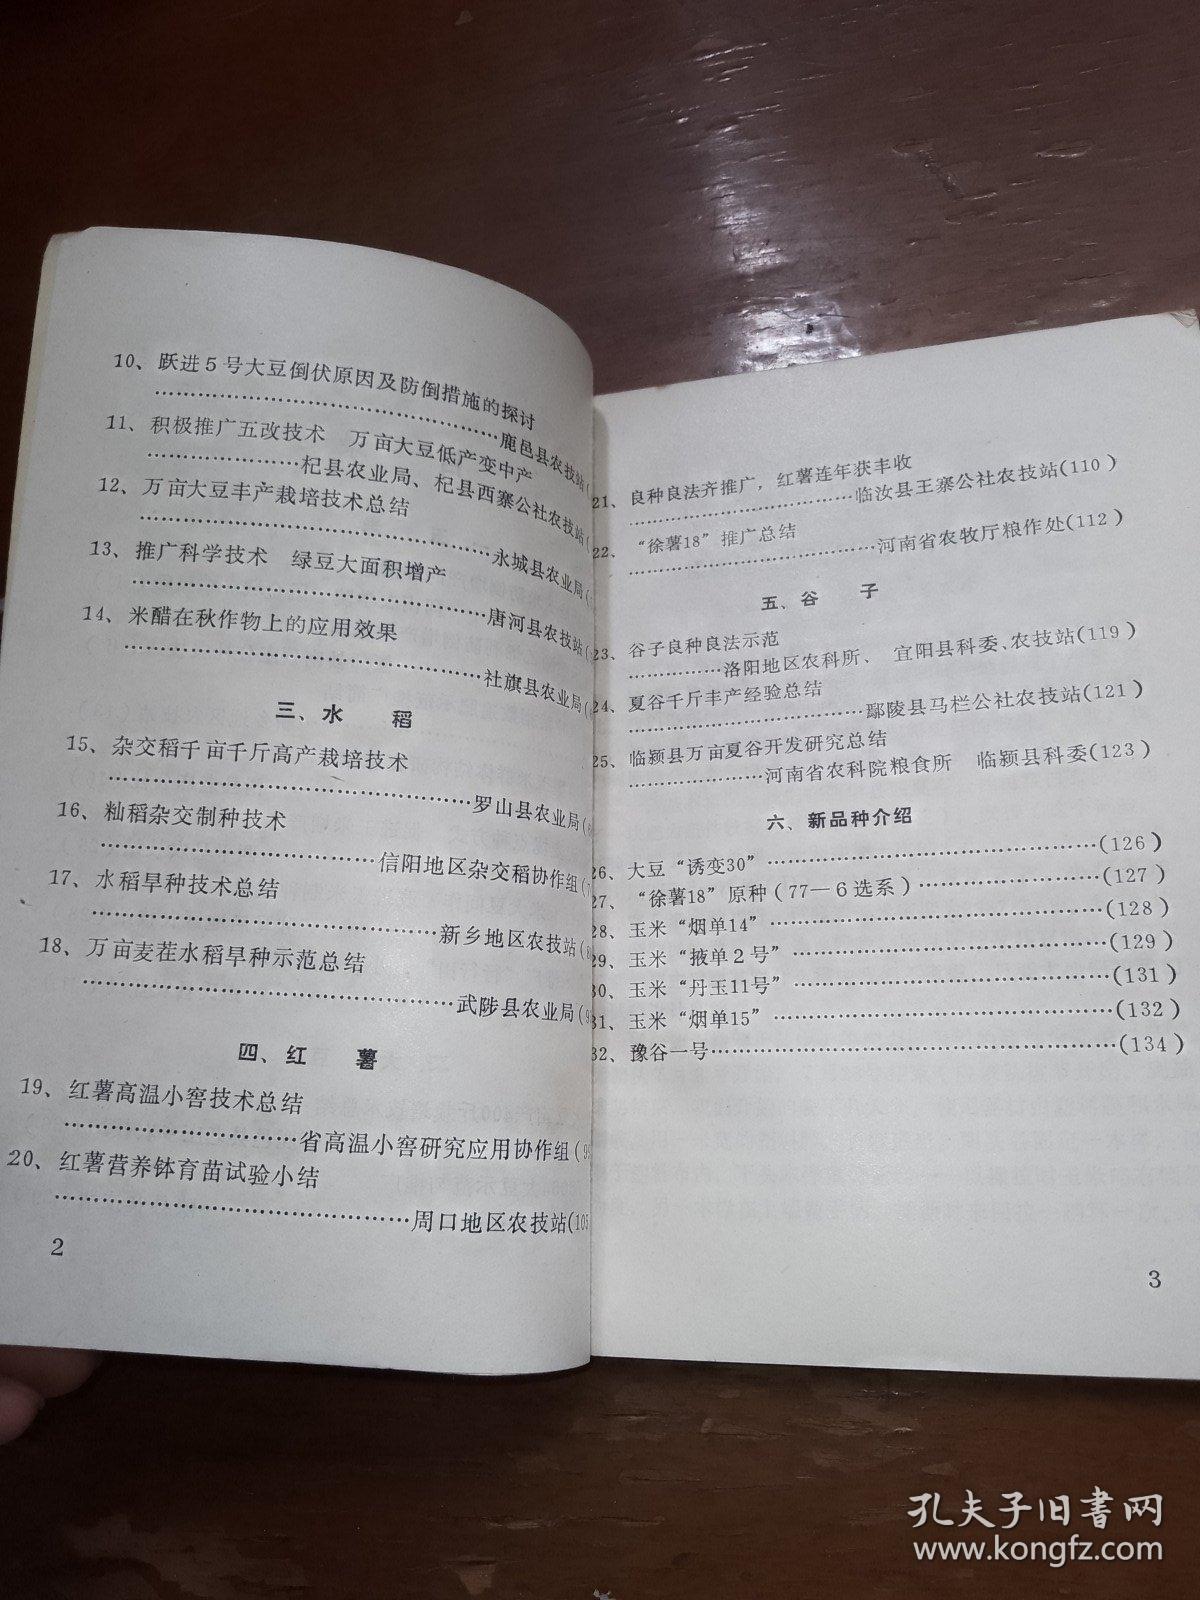 河南省秋粮增产技术经验选编1983年。